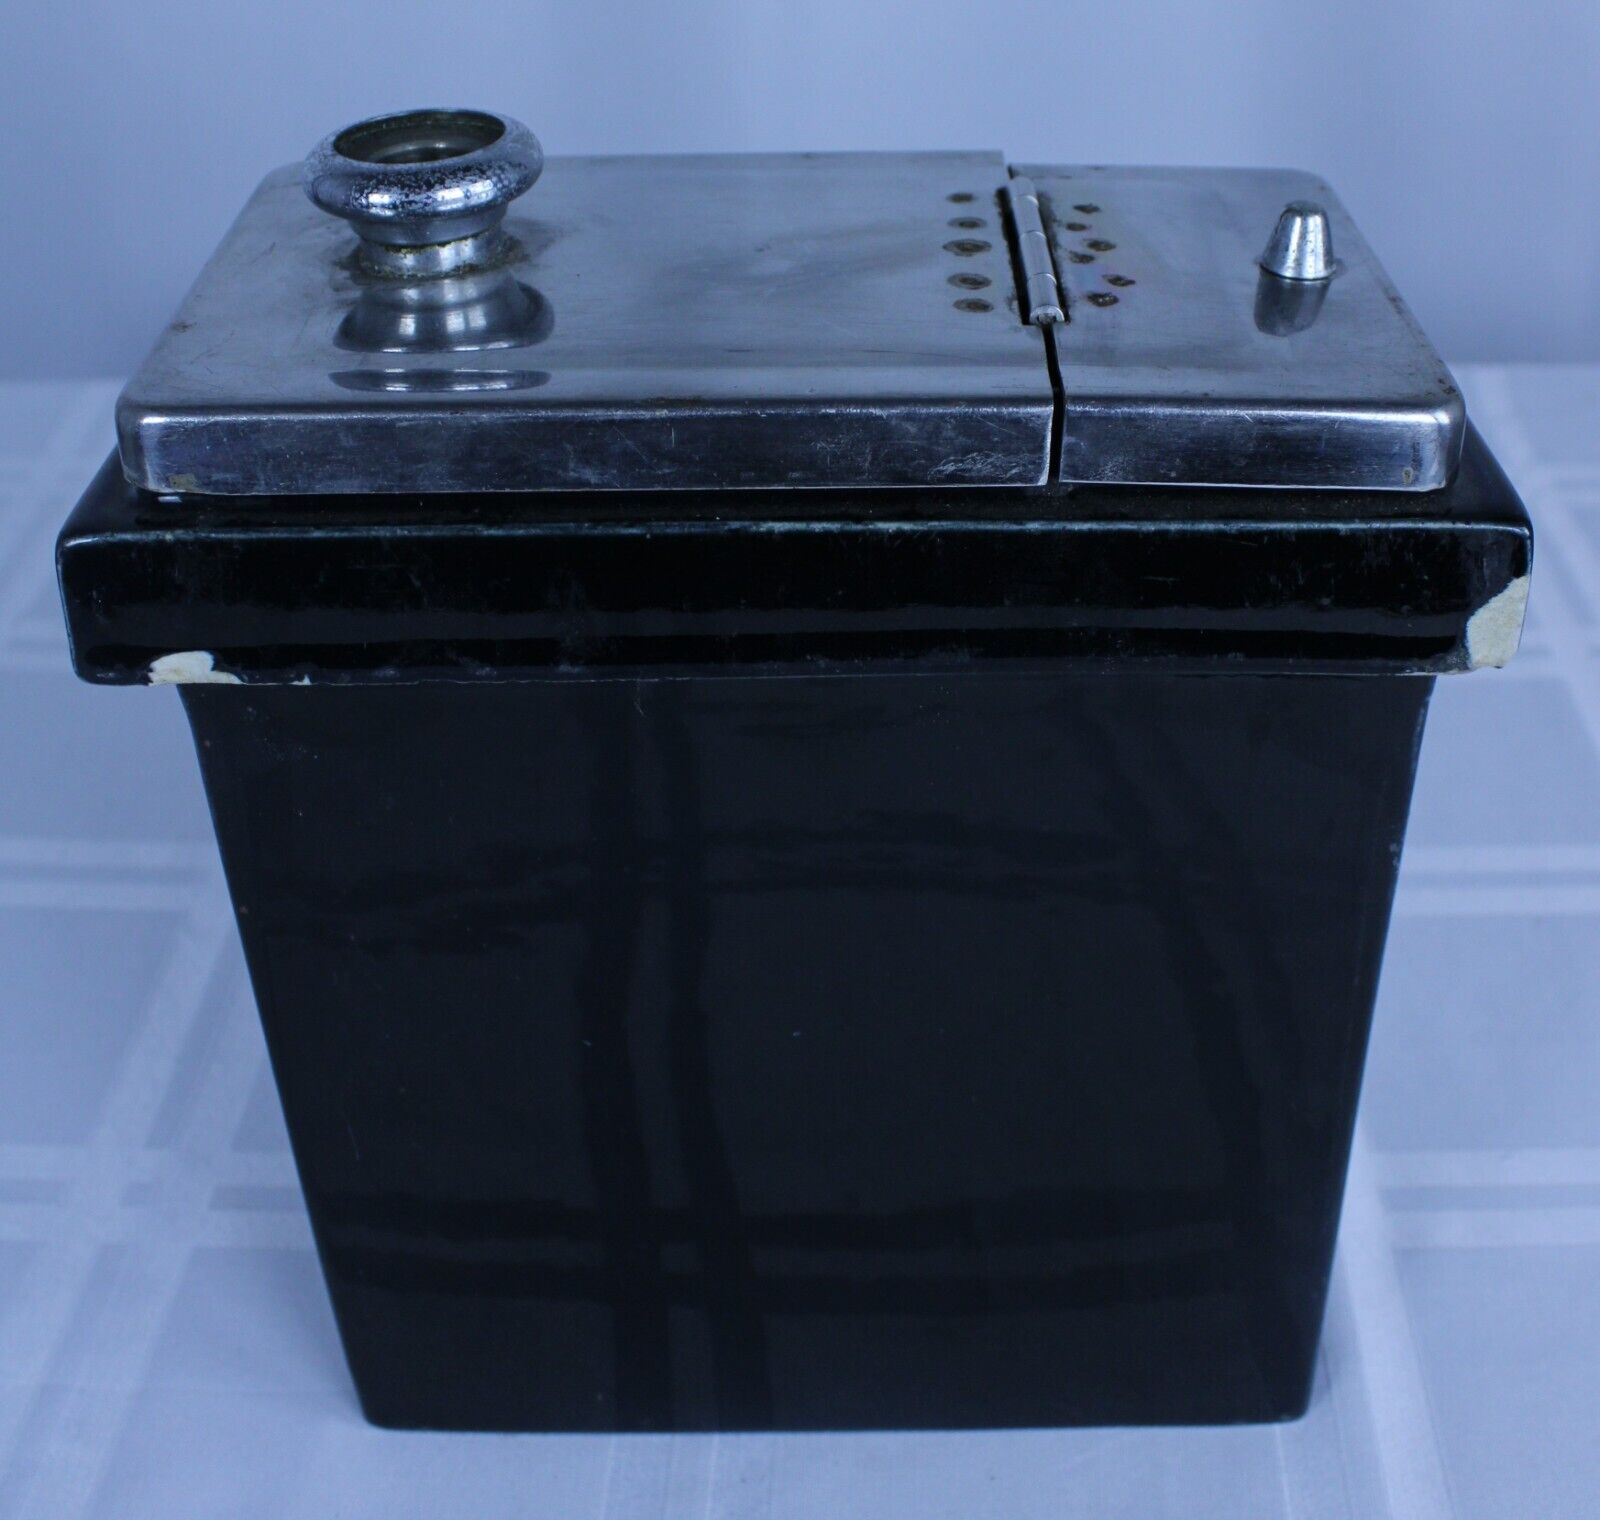 (17v2) LCG 589 JA Porcelain Ice Cream Topping Container (Black)